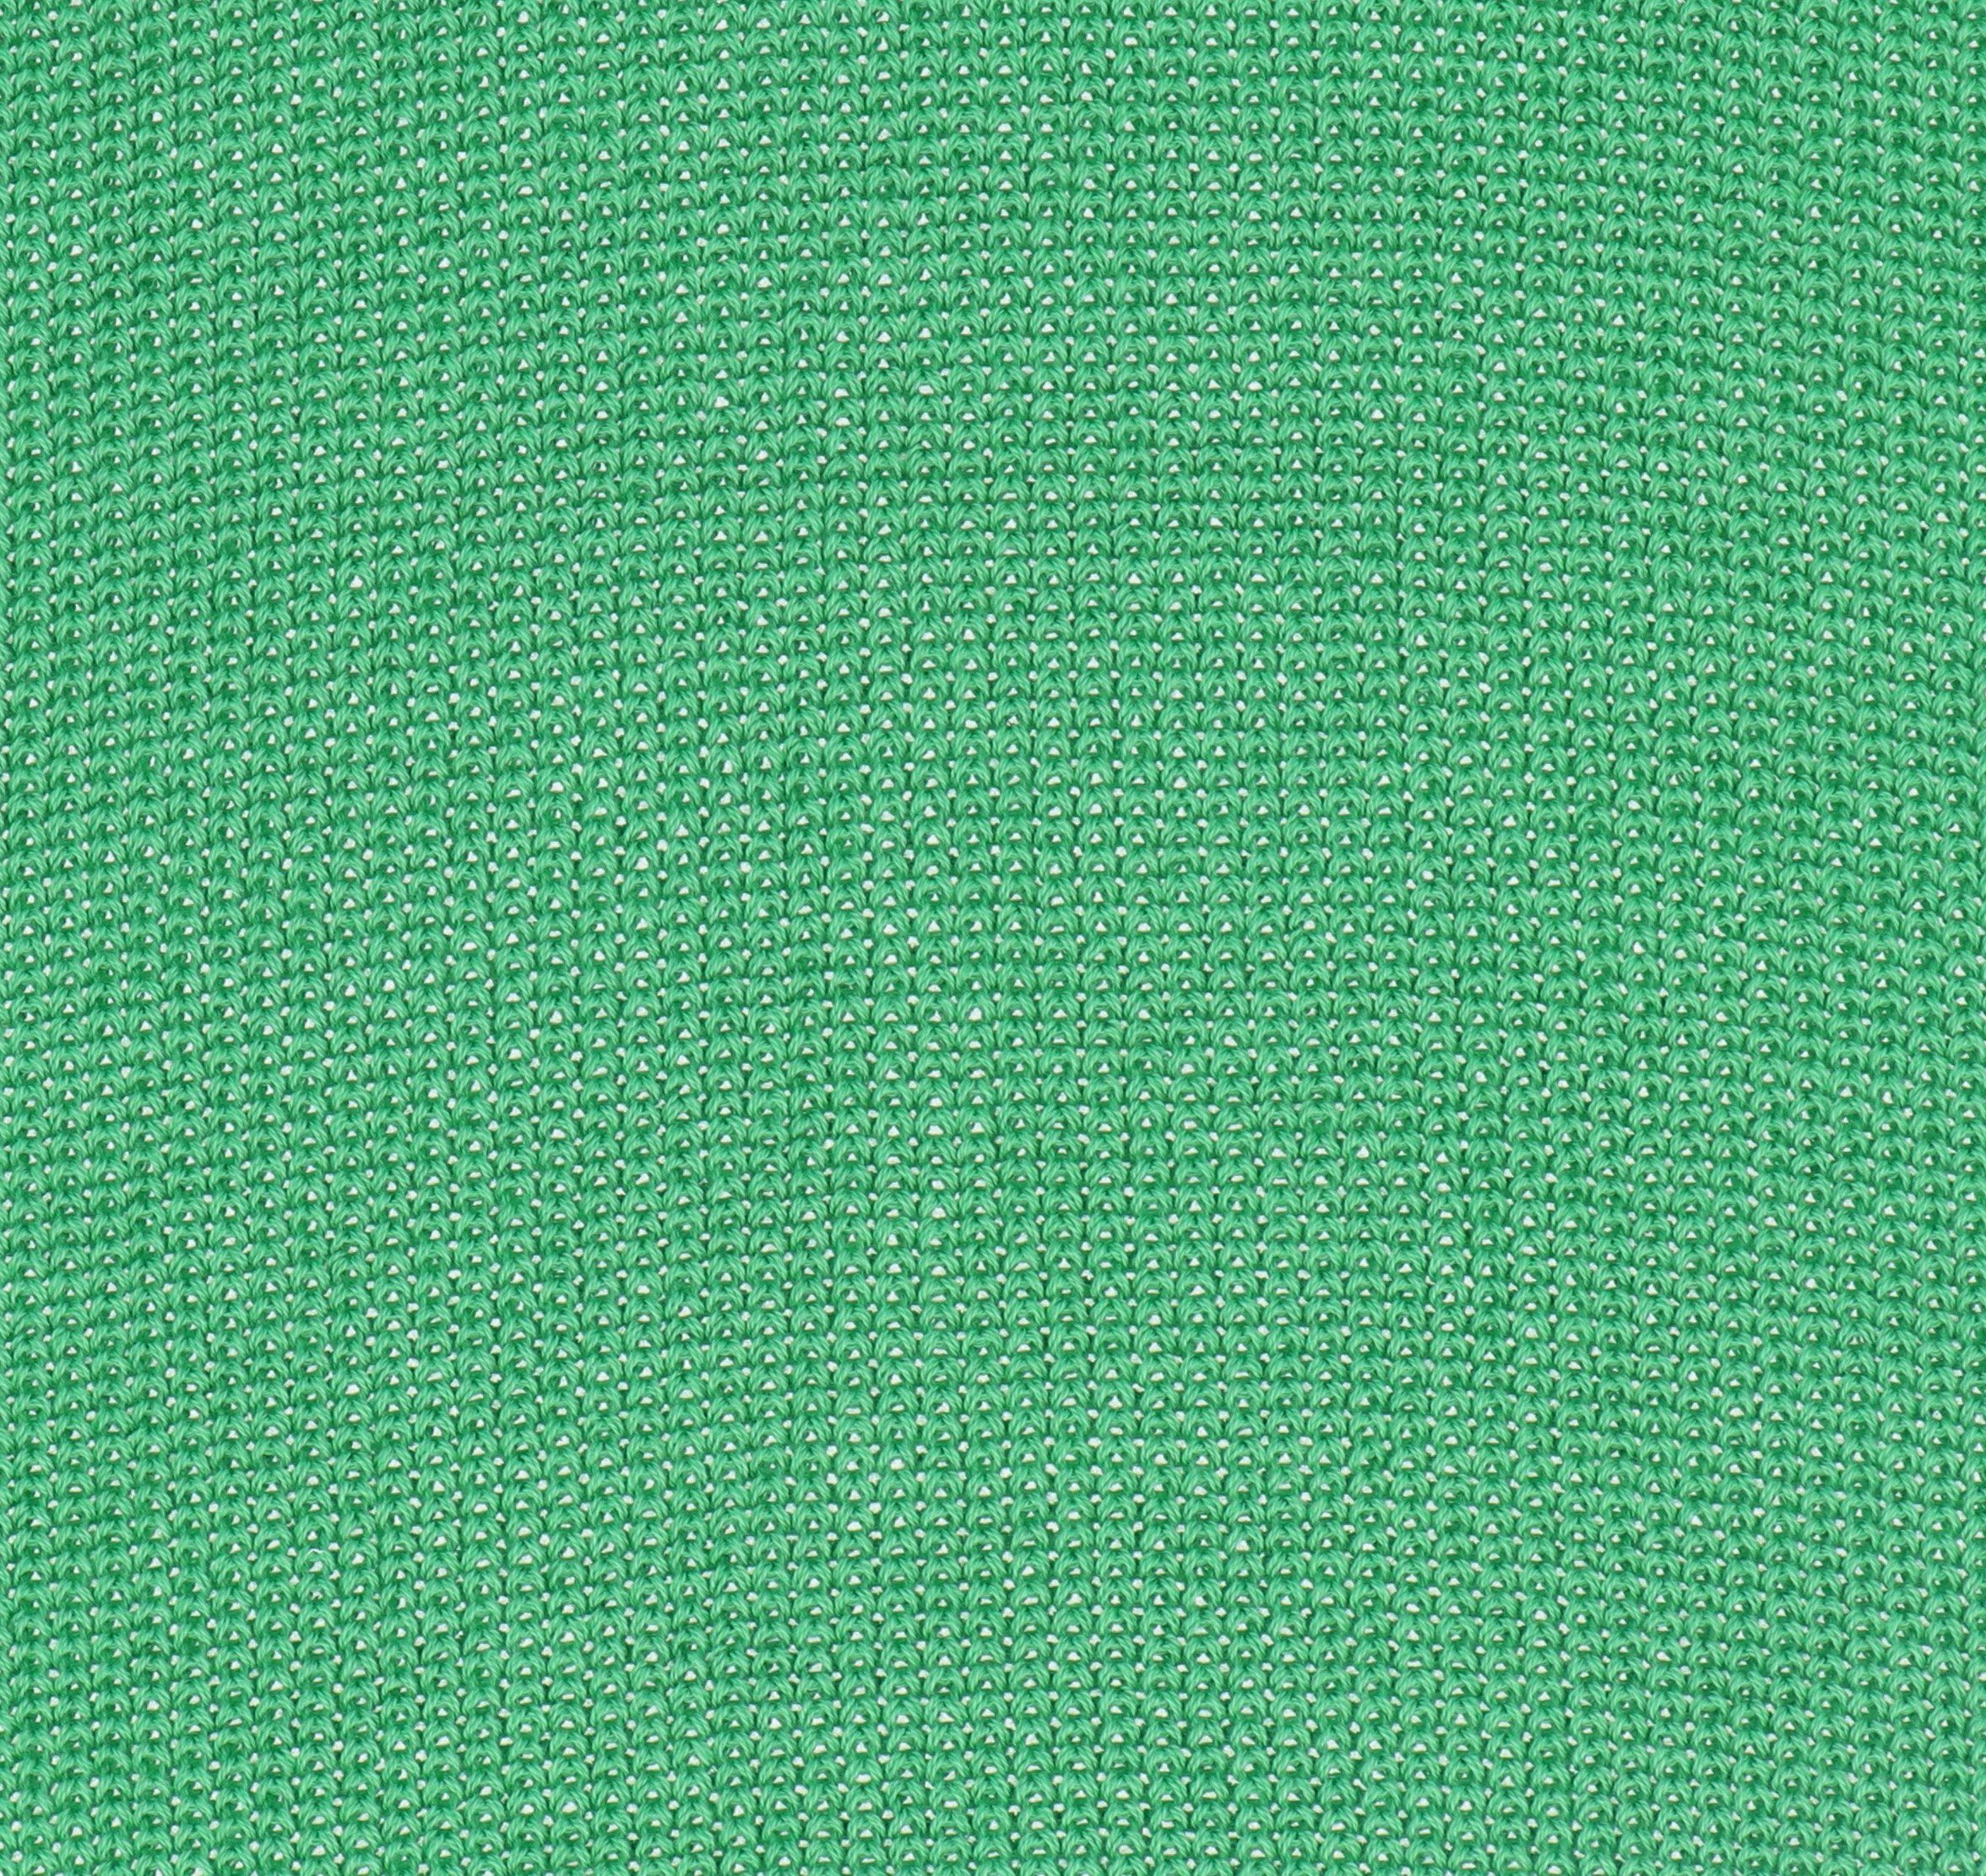 halsüberkopf Accessoires Modeschal grün reiner aus Strickschal, Baumwolle